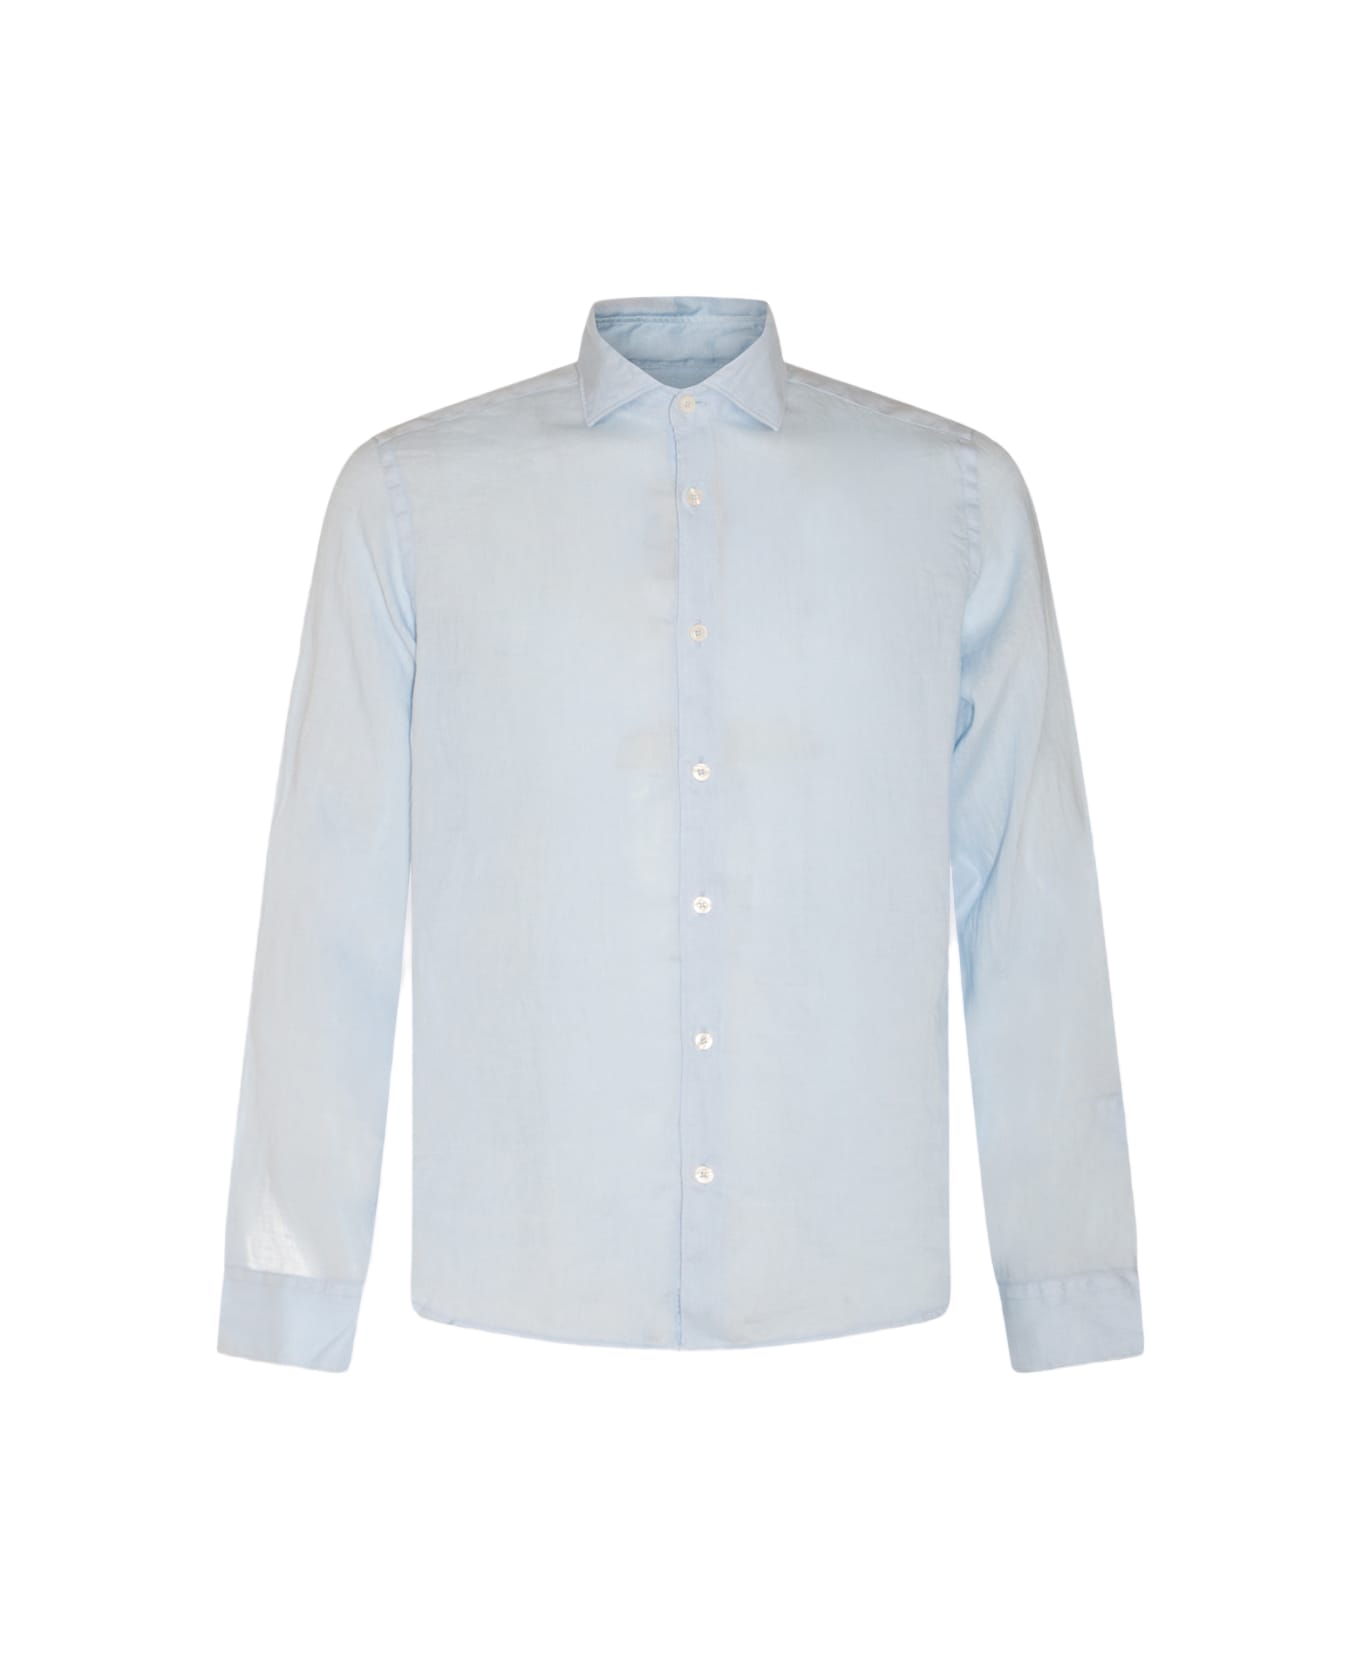 Altea Light Blue Linen Shirt - Clear Blue シャツ